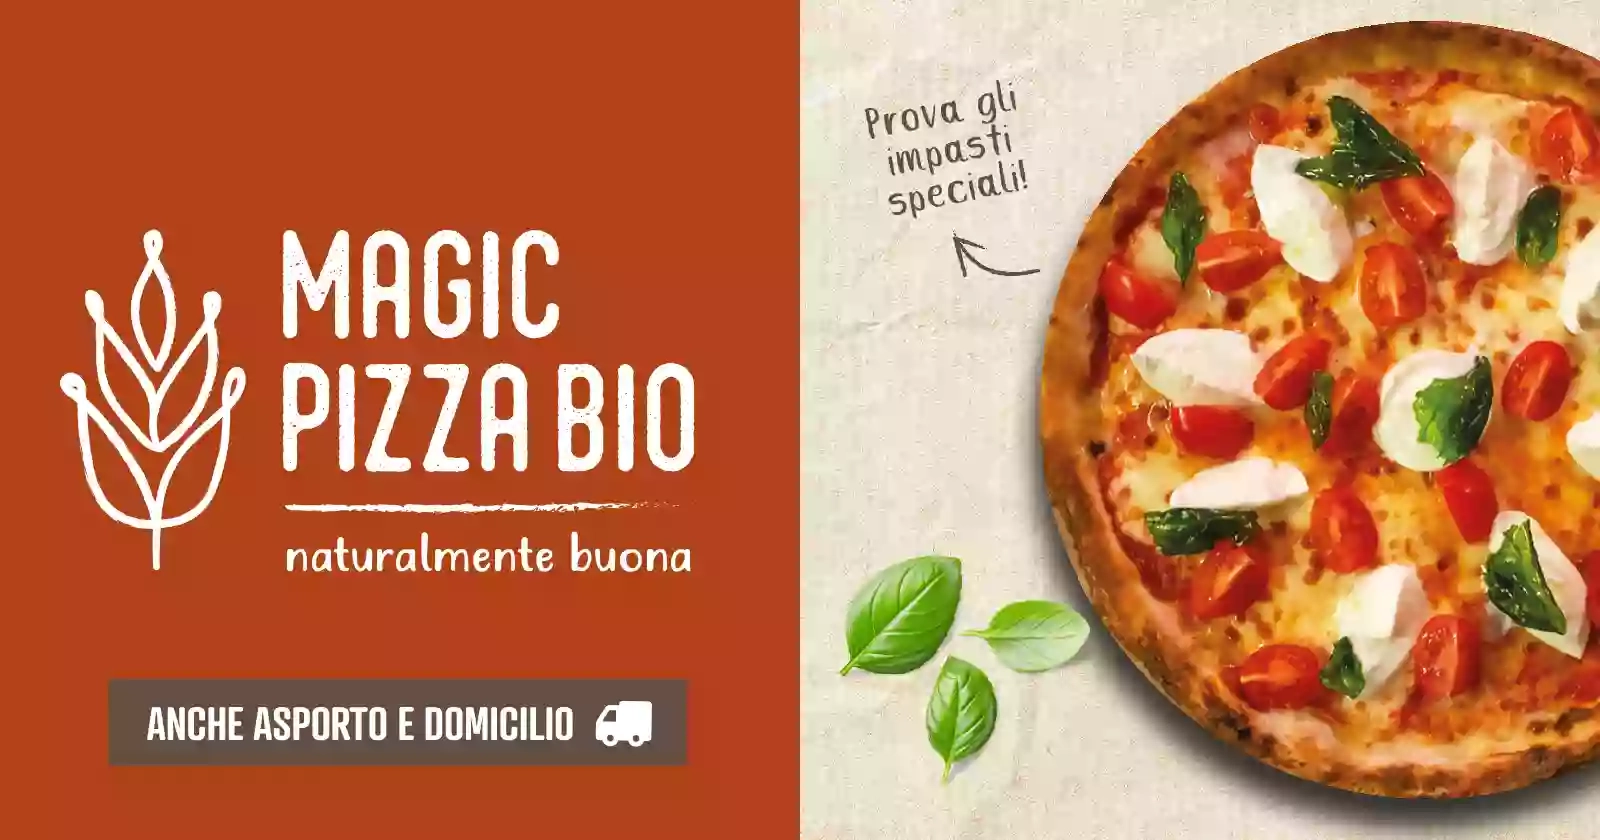 Magic Pizza Bio Forlimpopoli